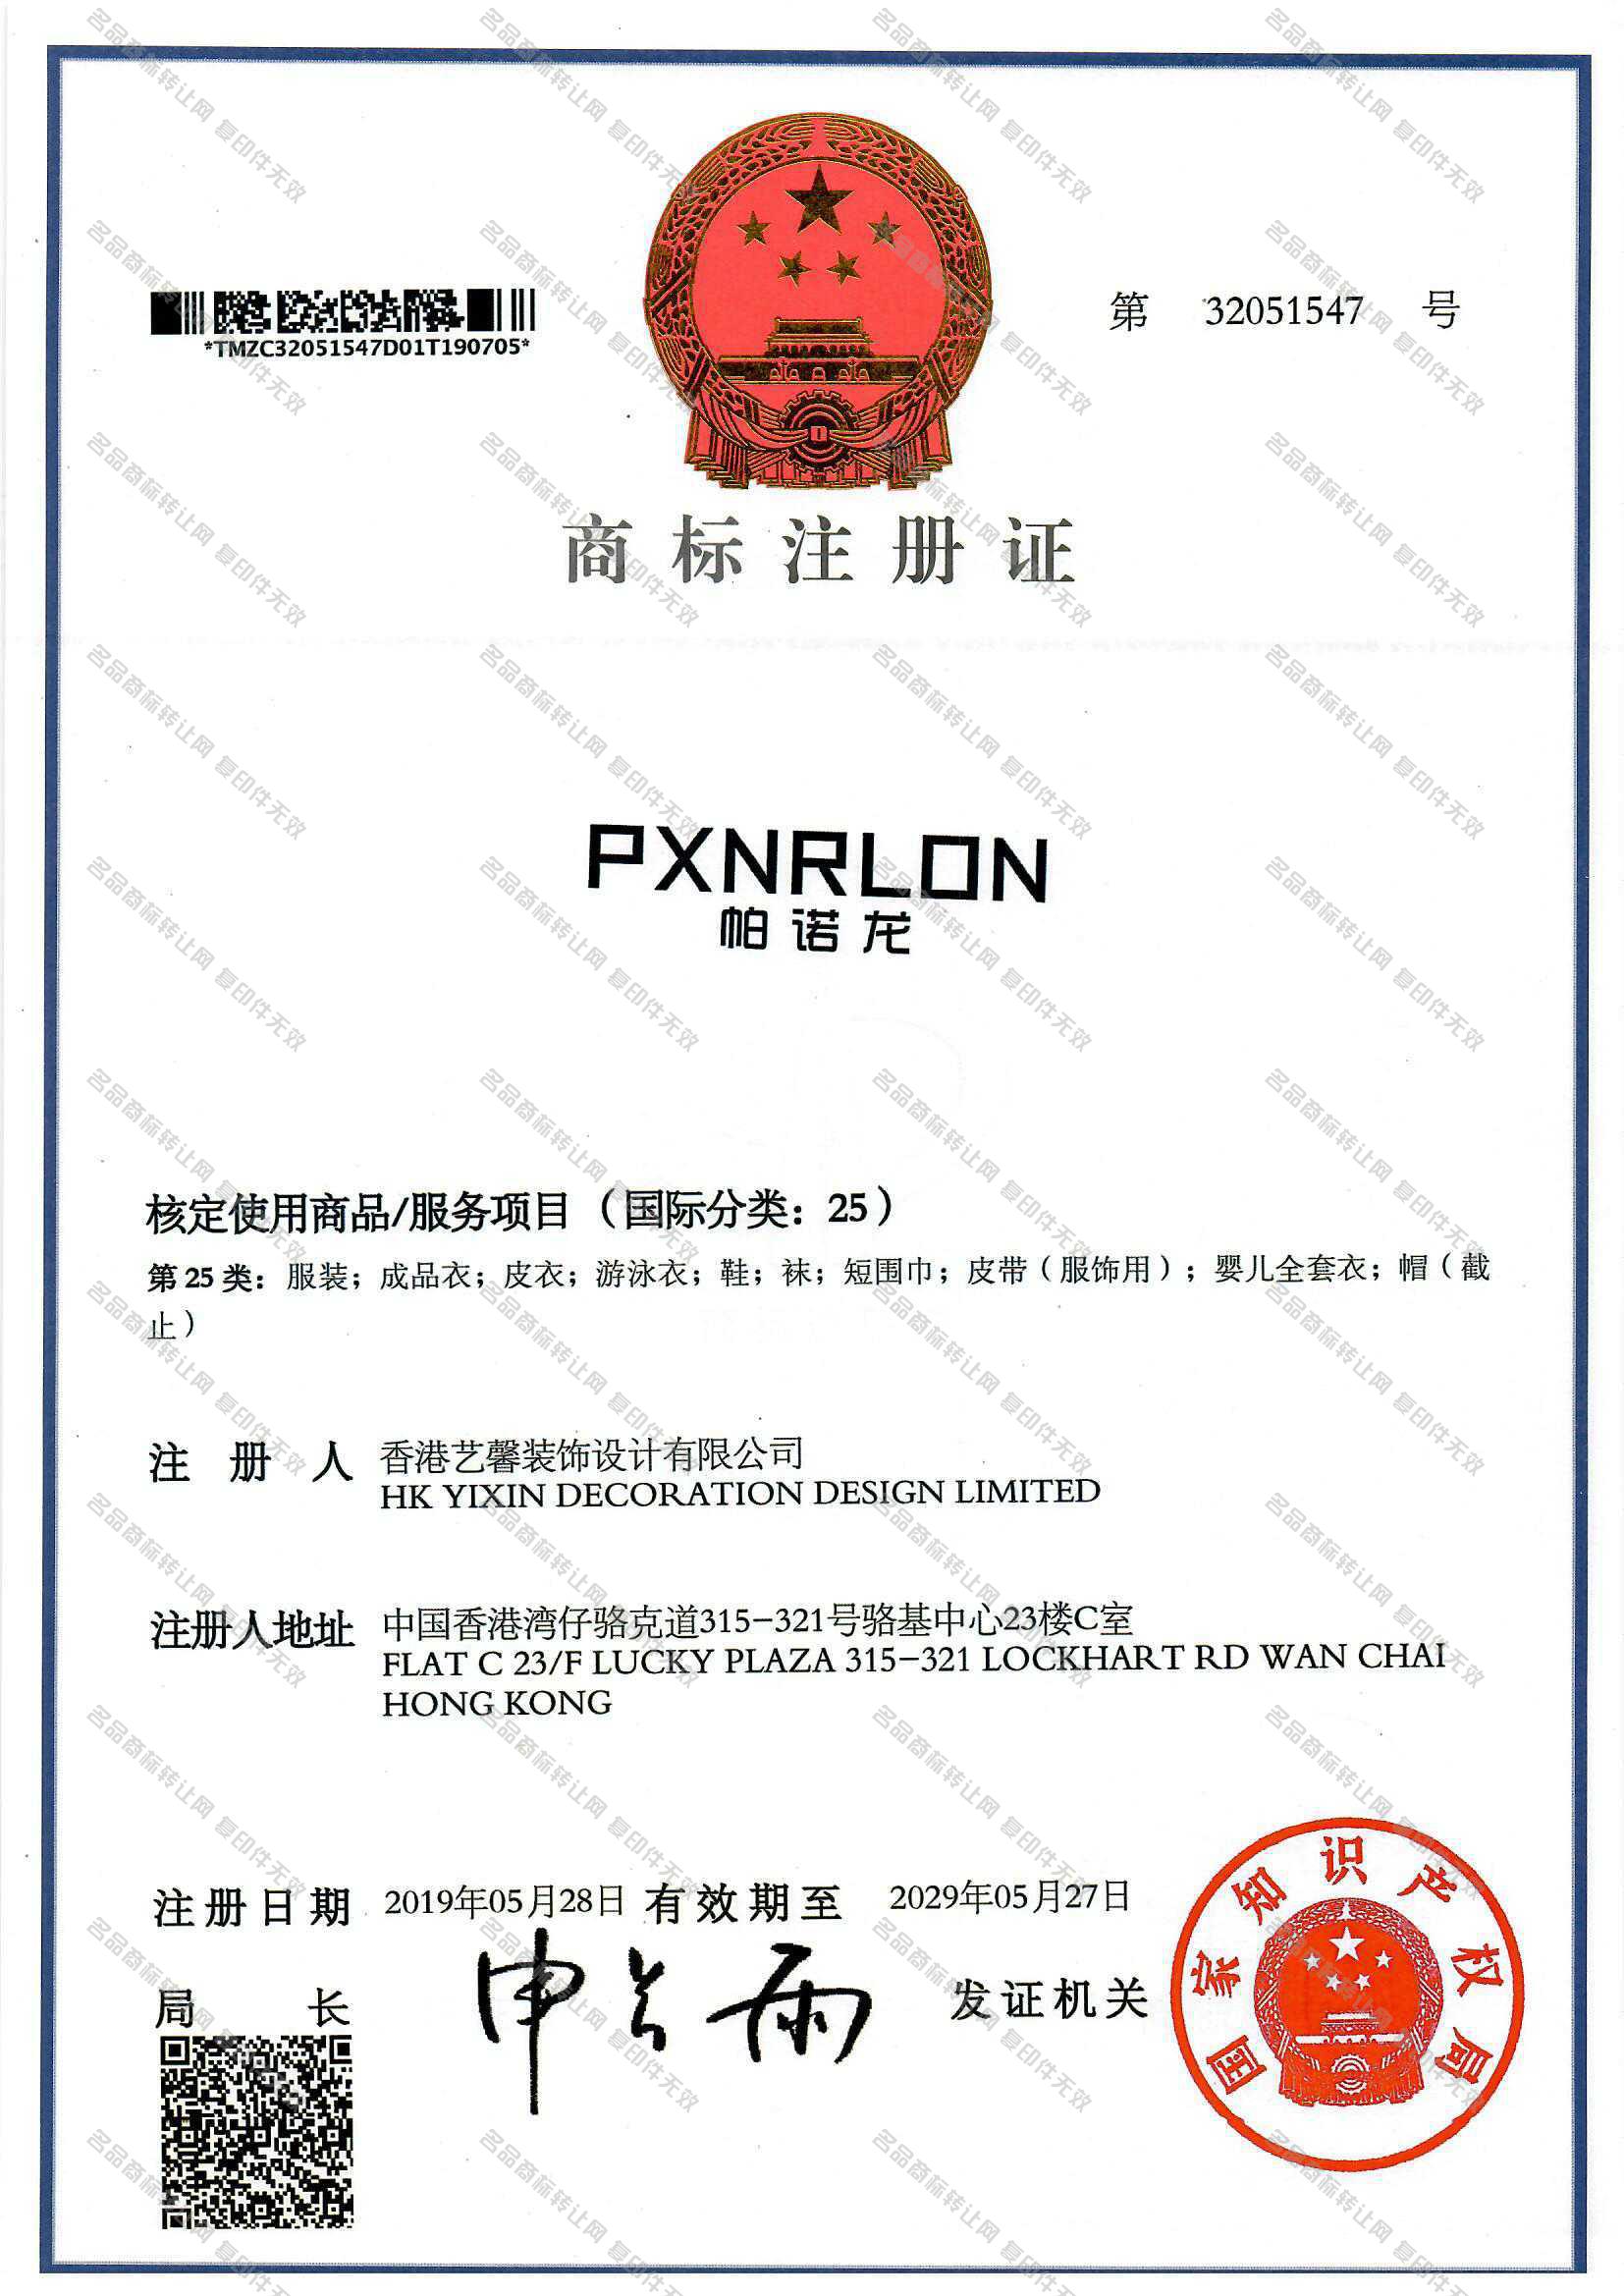 帕诺龙,PXNRLON注册证